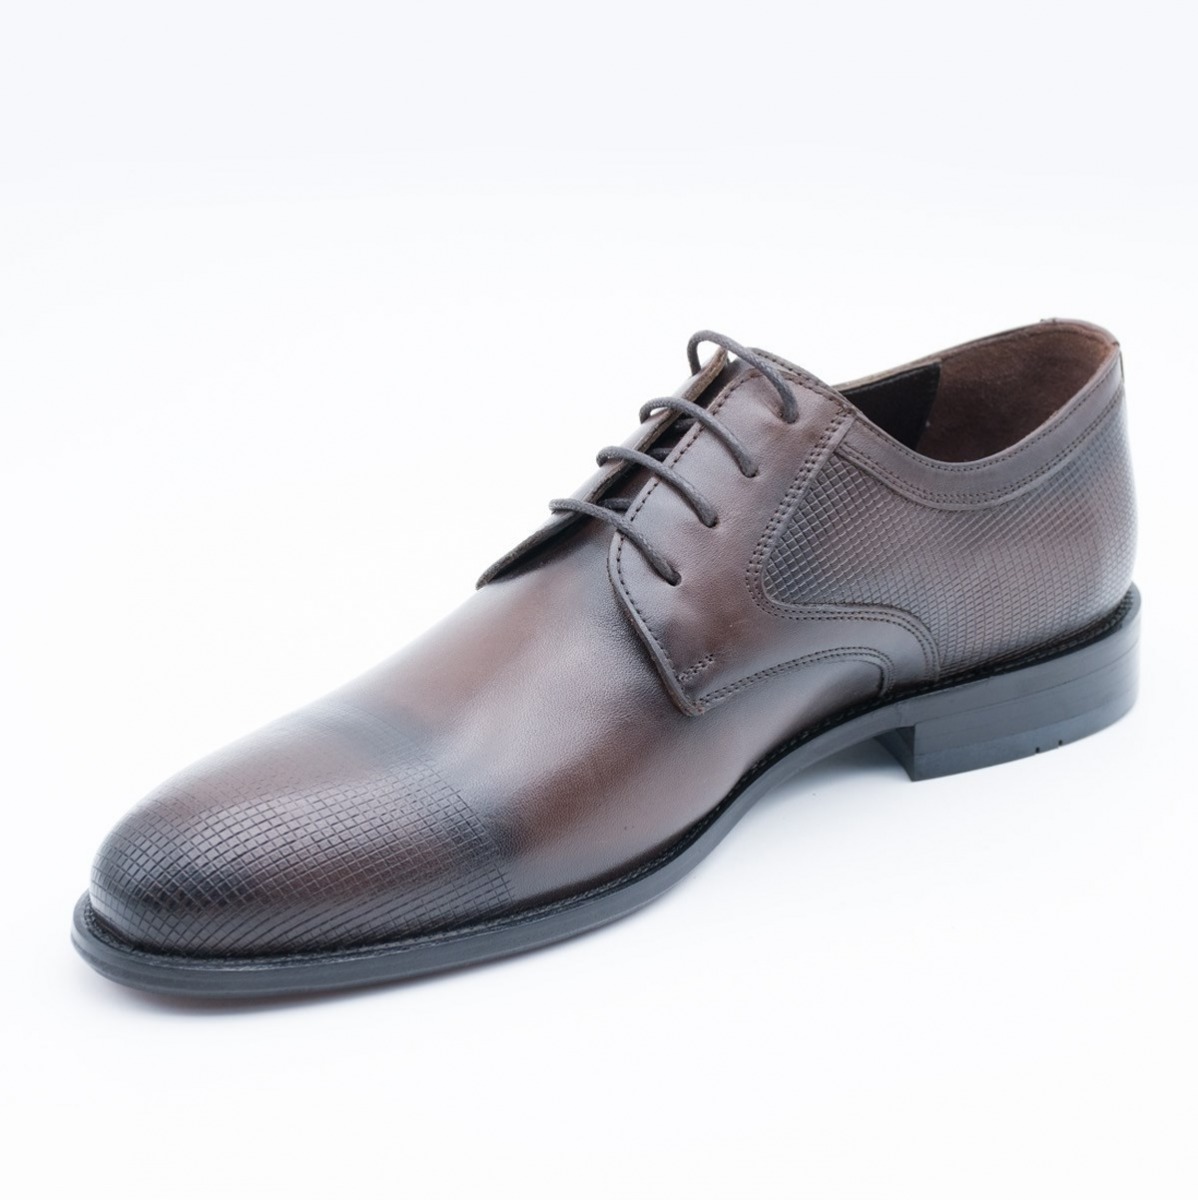 Flo Erkek Deri Klasik Ayakkabı İ19523-1 M 1000 KAHVE. 4